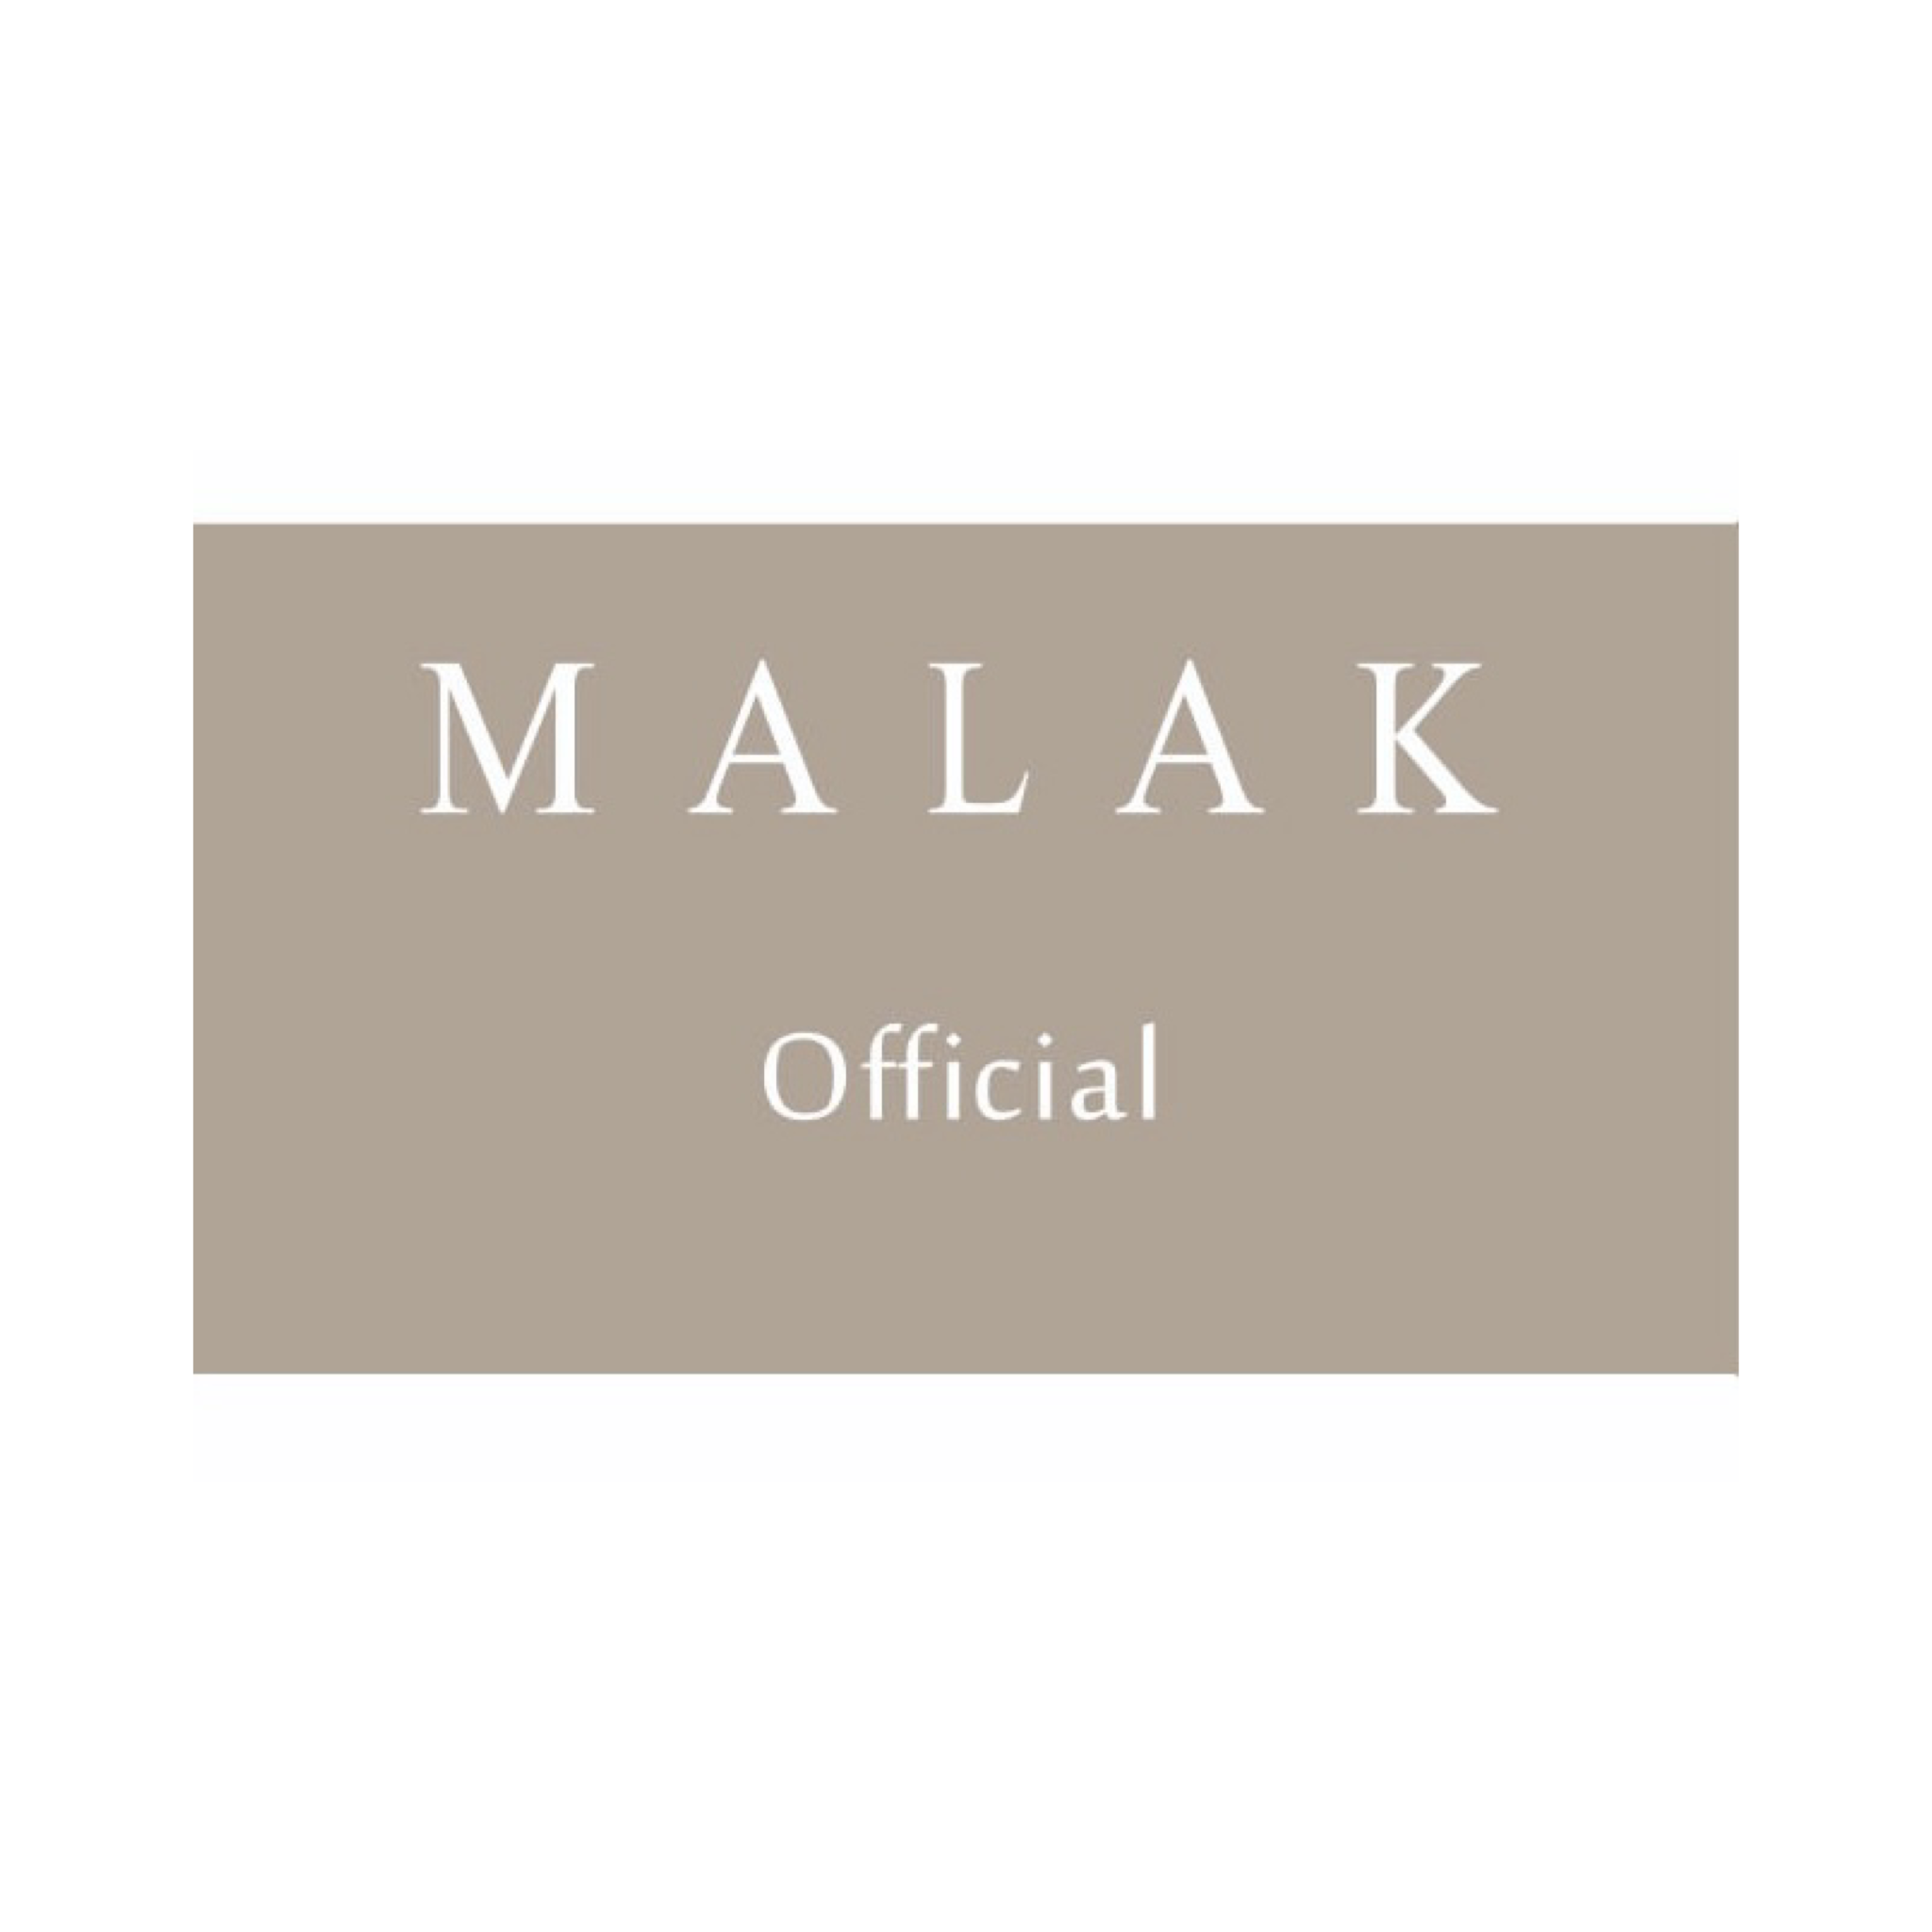 Malak Official